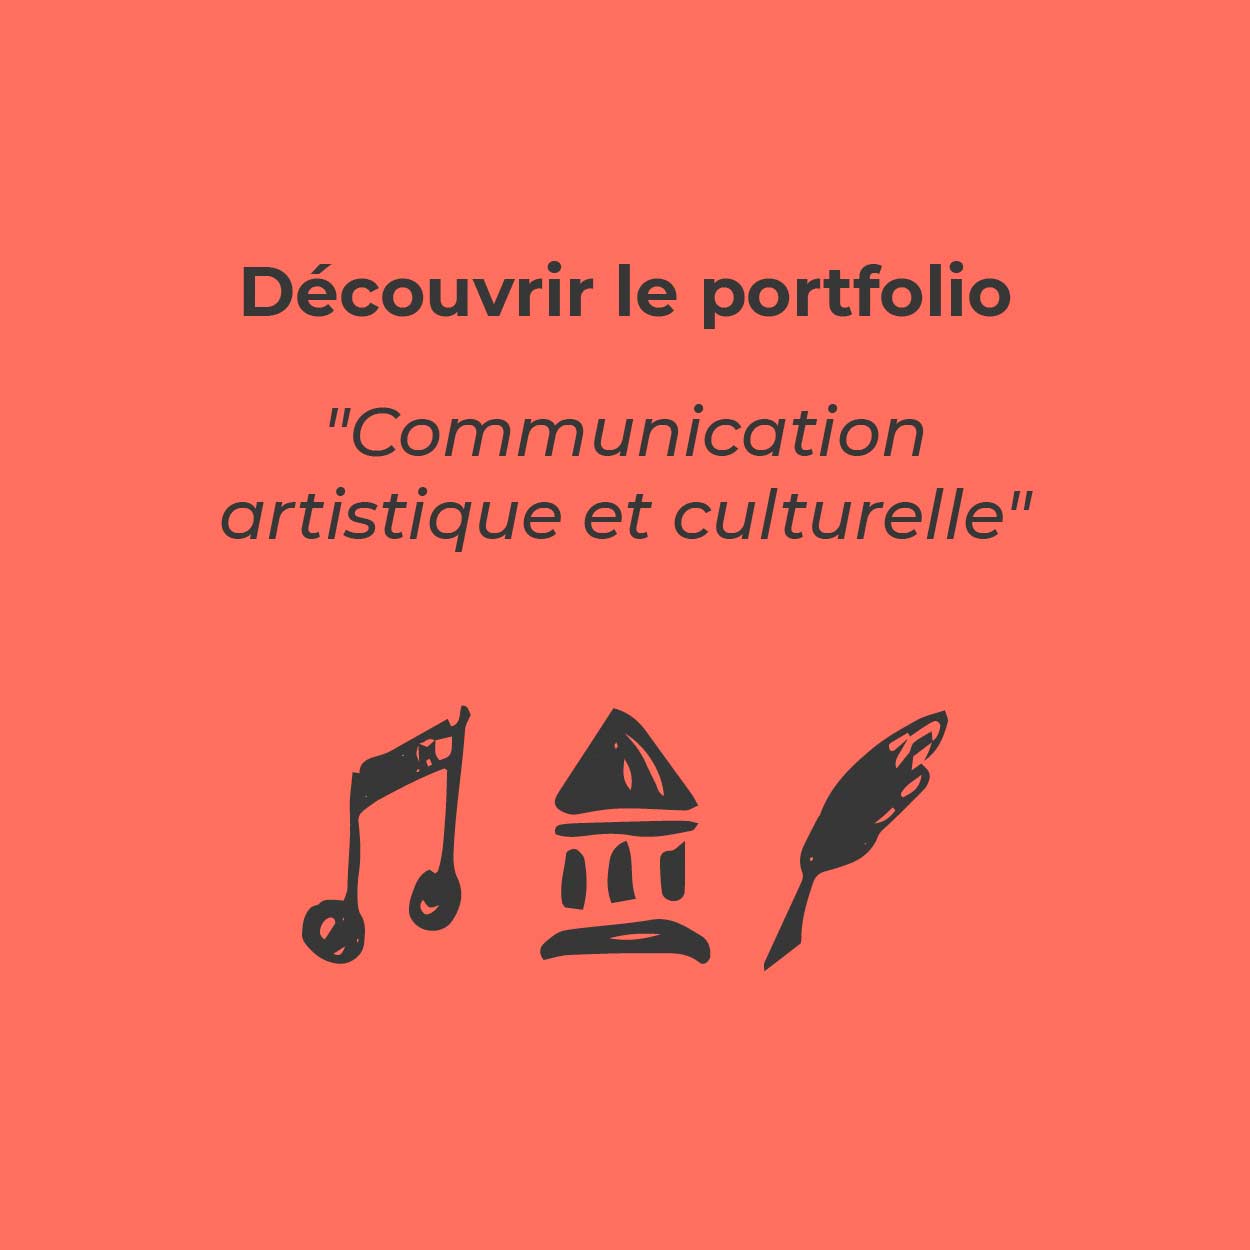 Bouton pour découvrir le portfolio « Communication artistique et culturelle »